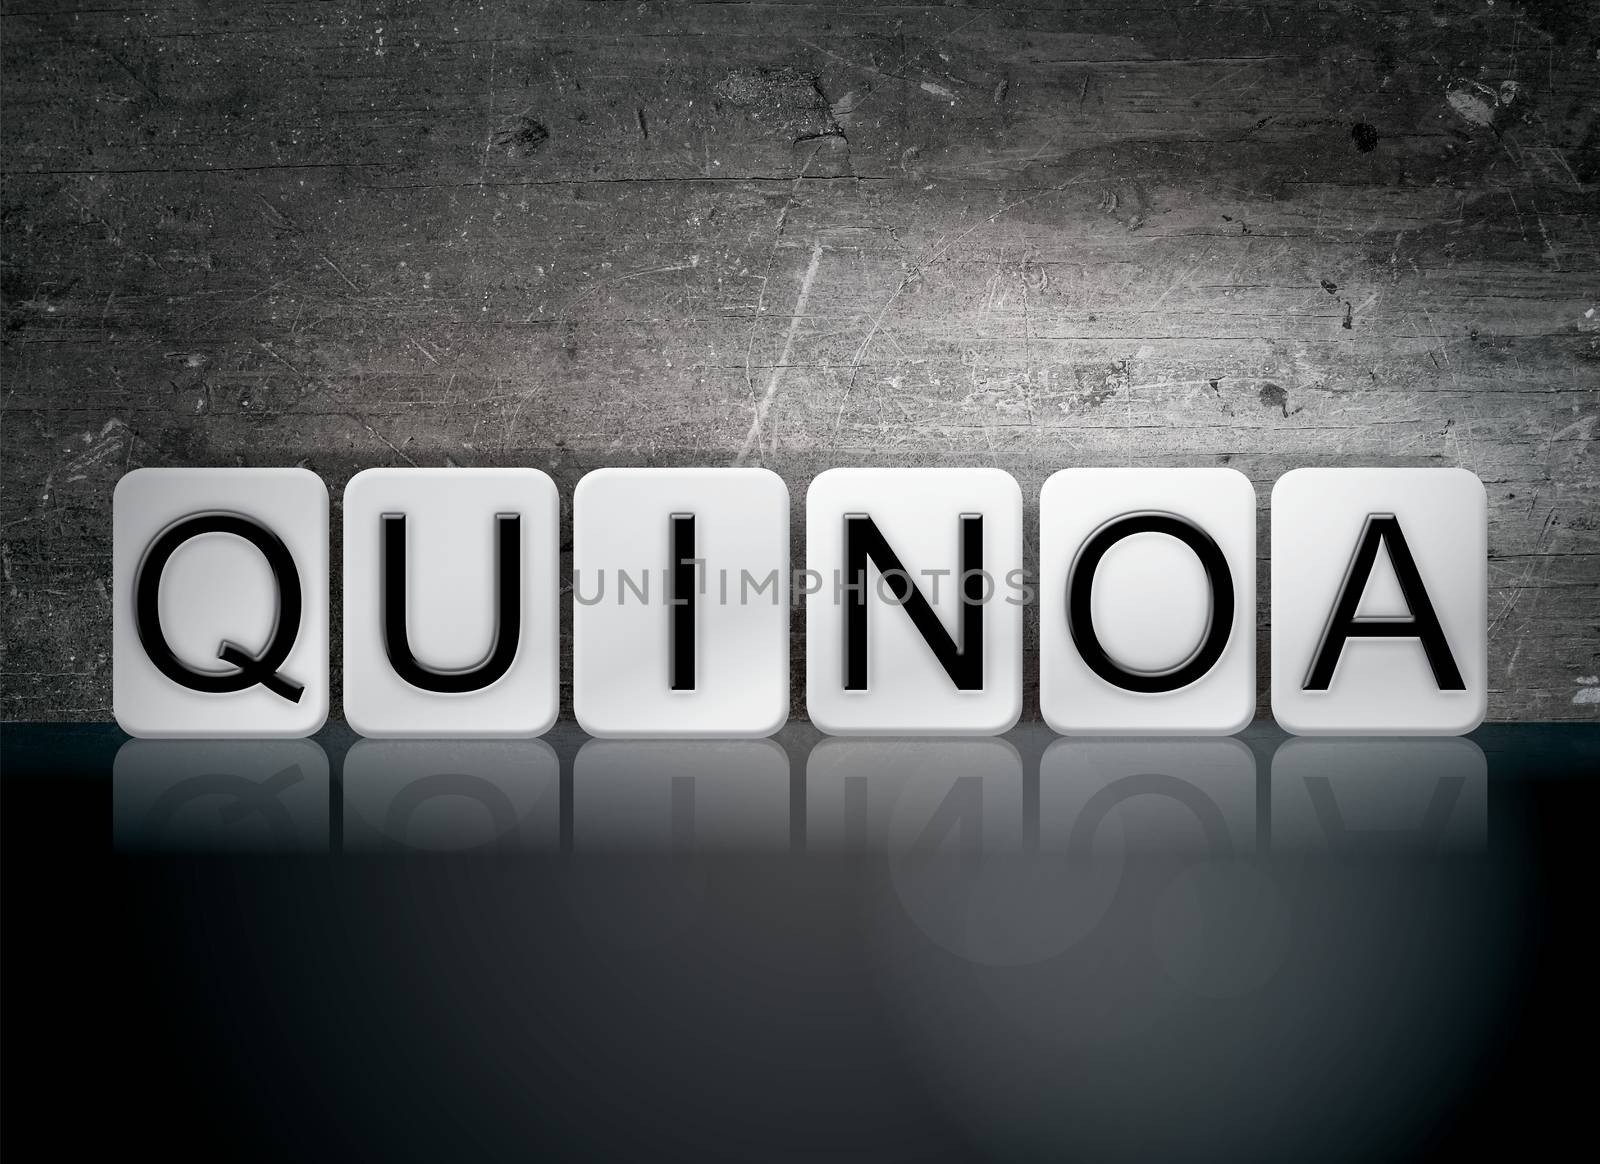 The word "Quinoa" written in white tiles against a dark vintage grunge background.